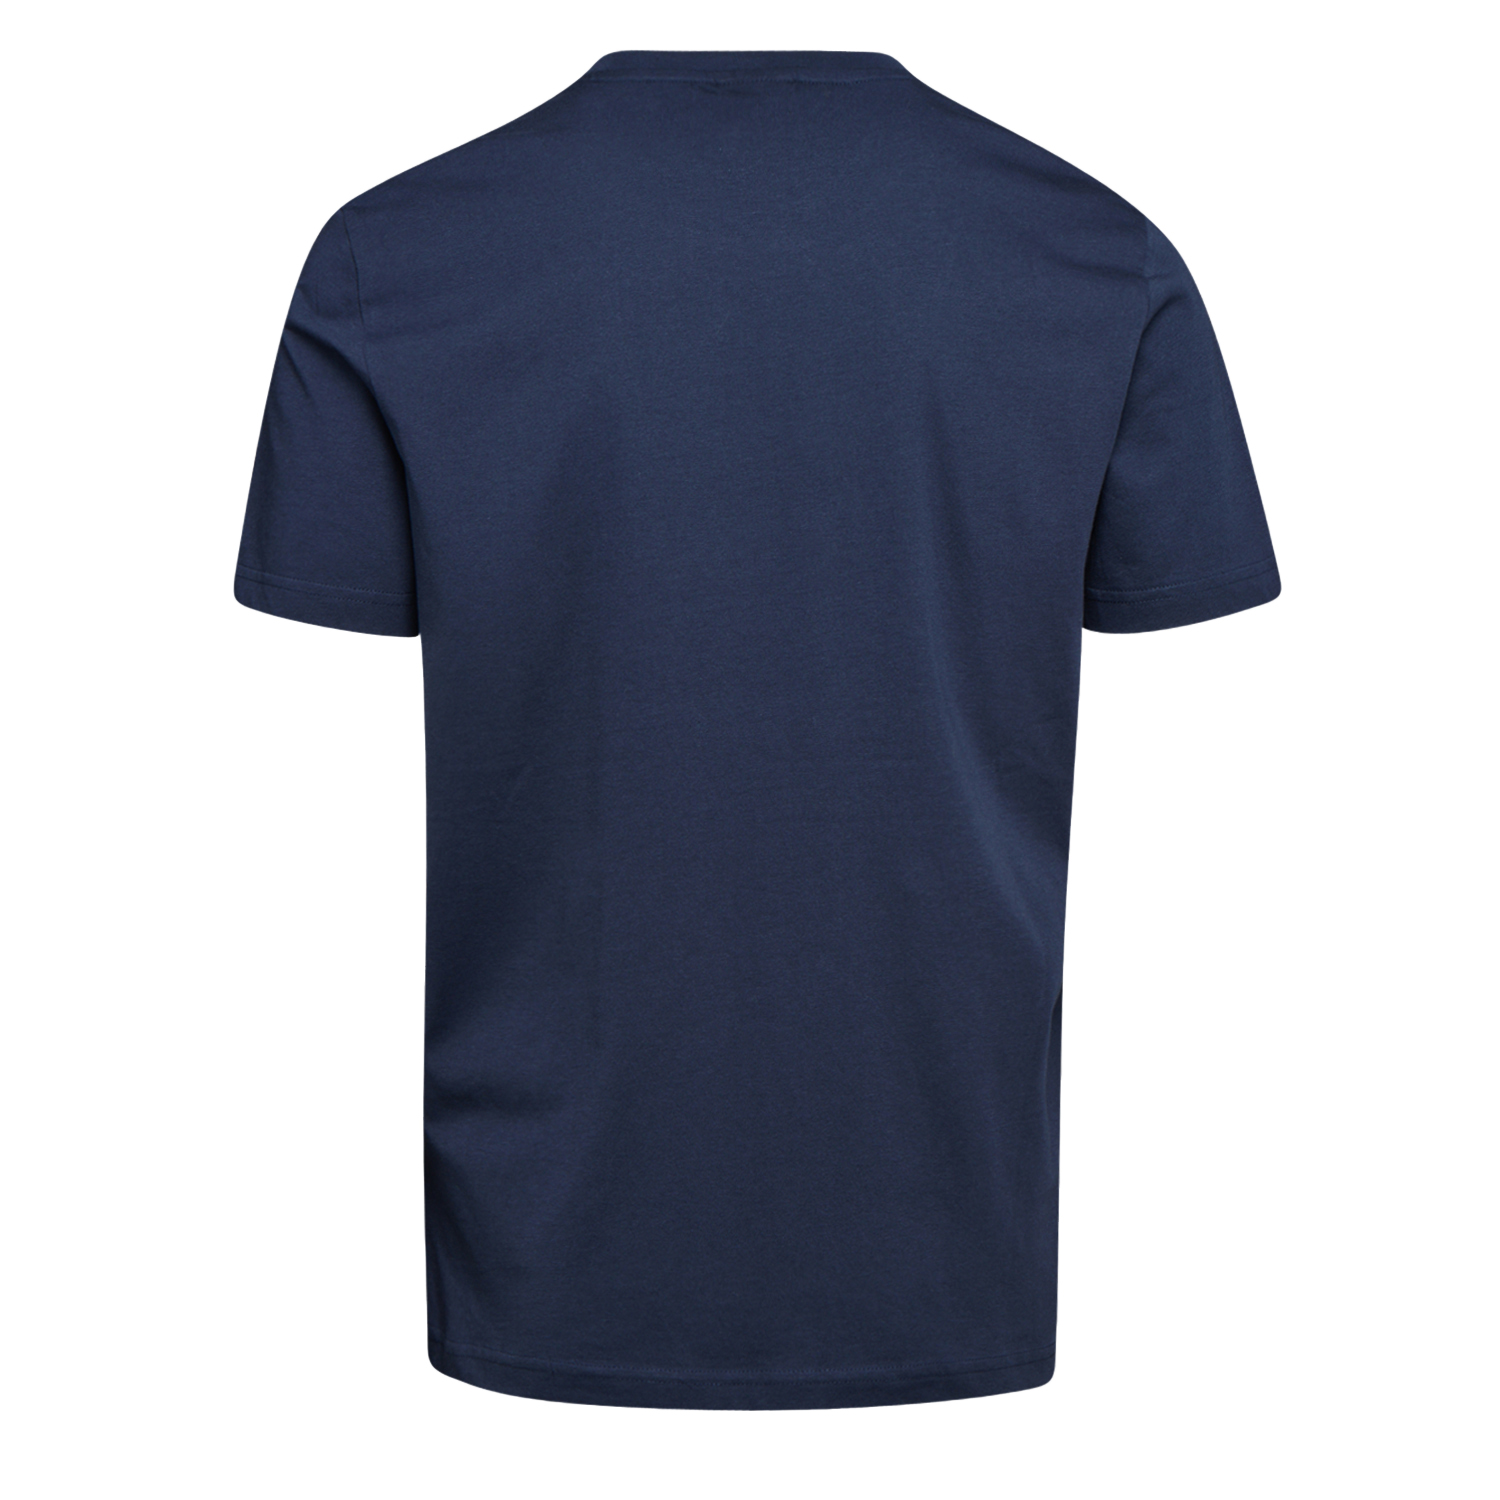 Tee-shirt de travail GRAPHIC ORGANIC à manches courtes bleu marine TM - DIADORA SPA - 702.176914